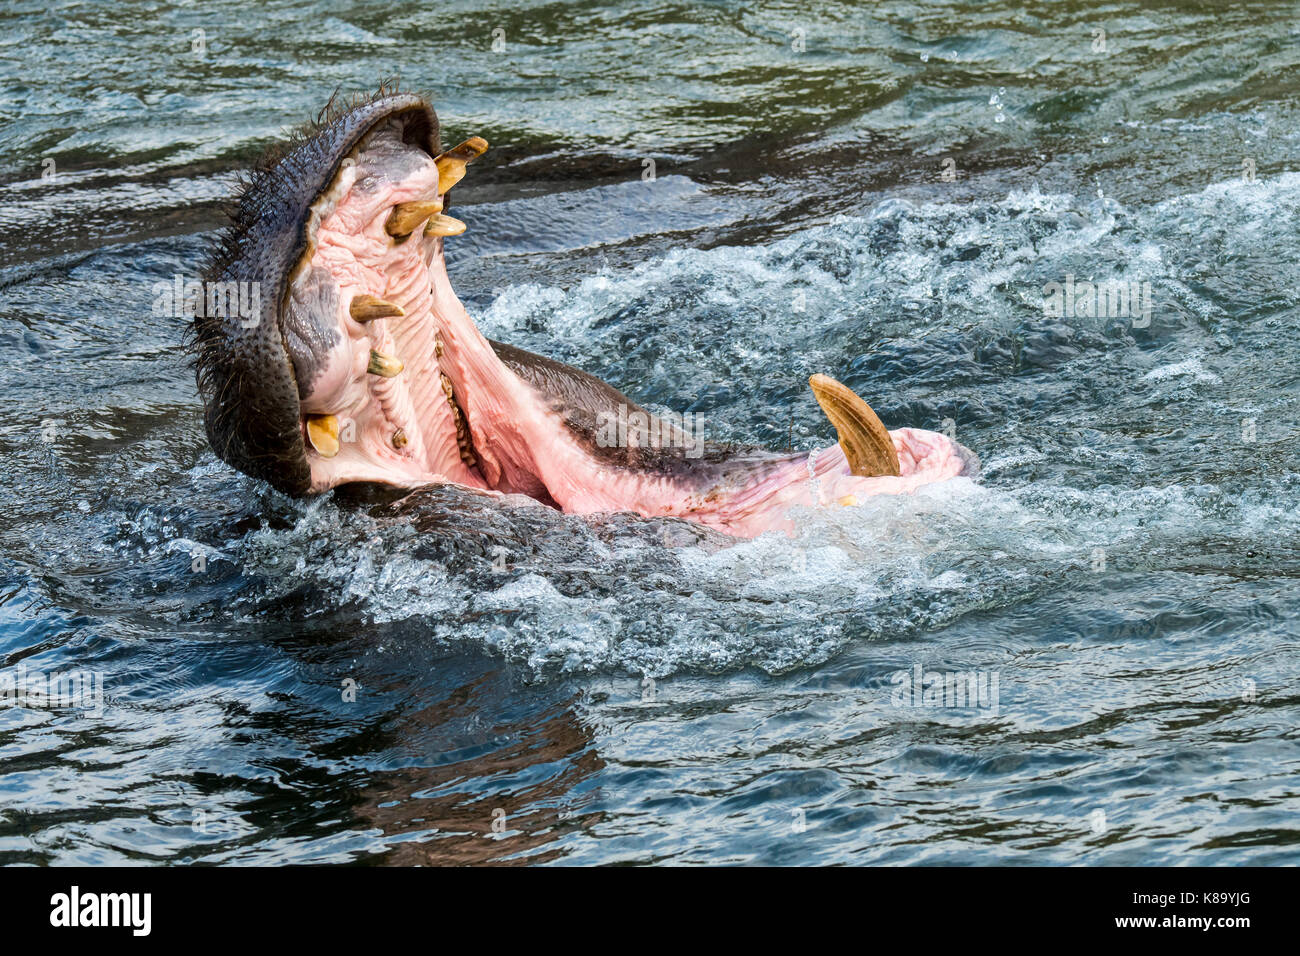 L'hippopotame commun / Hippopotame (Hippopotamus amphibius) dans le lac montrant d'énormes dents et de grandes défenses canine dans la bouche grande ouverte Banque D'Images